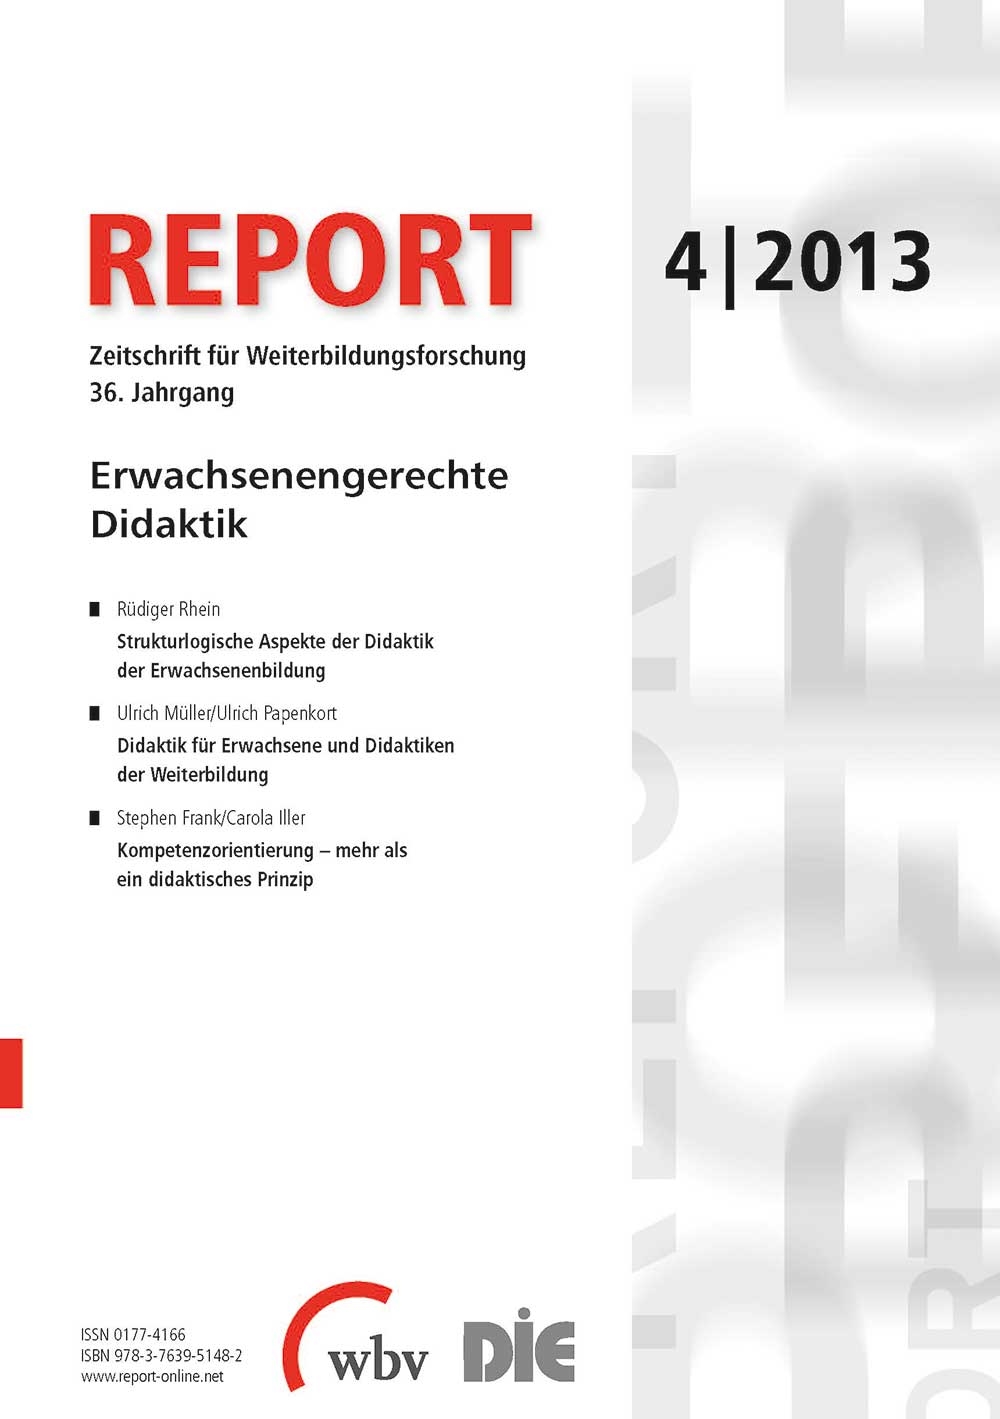 REPORT - Zeitschrift für Weiterbildungsforschung 04/2013